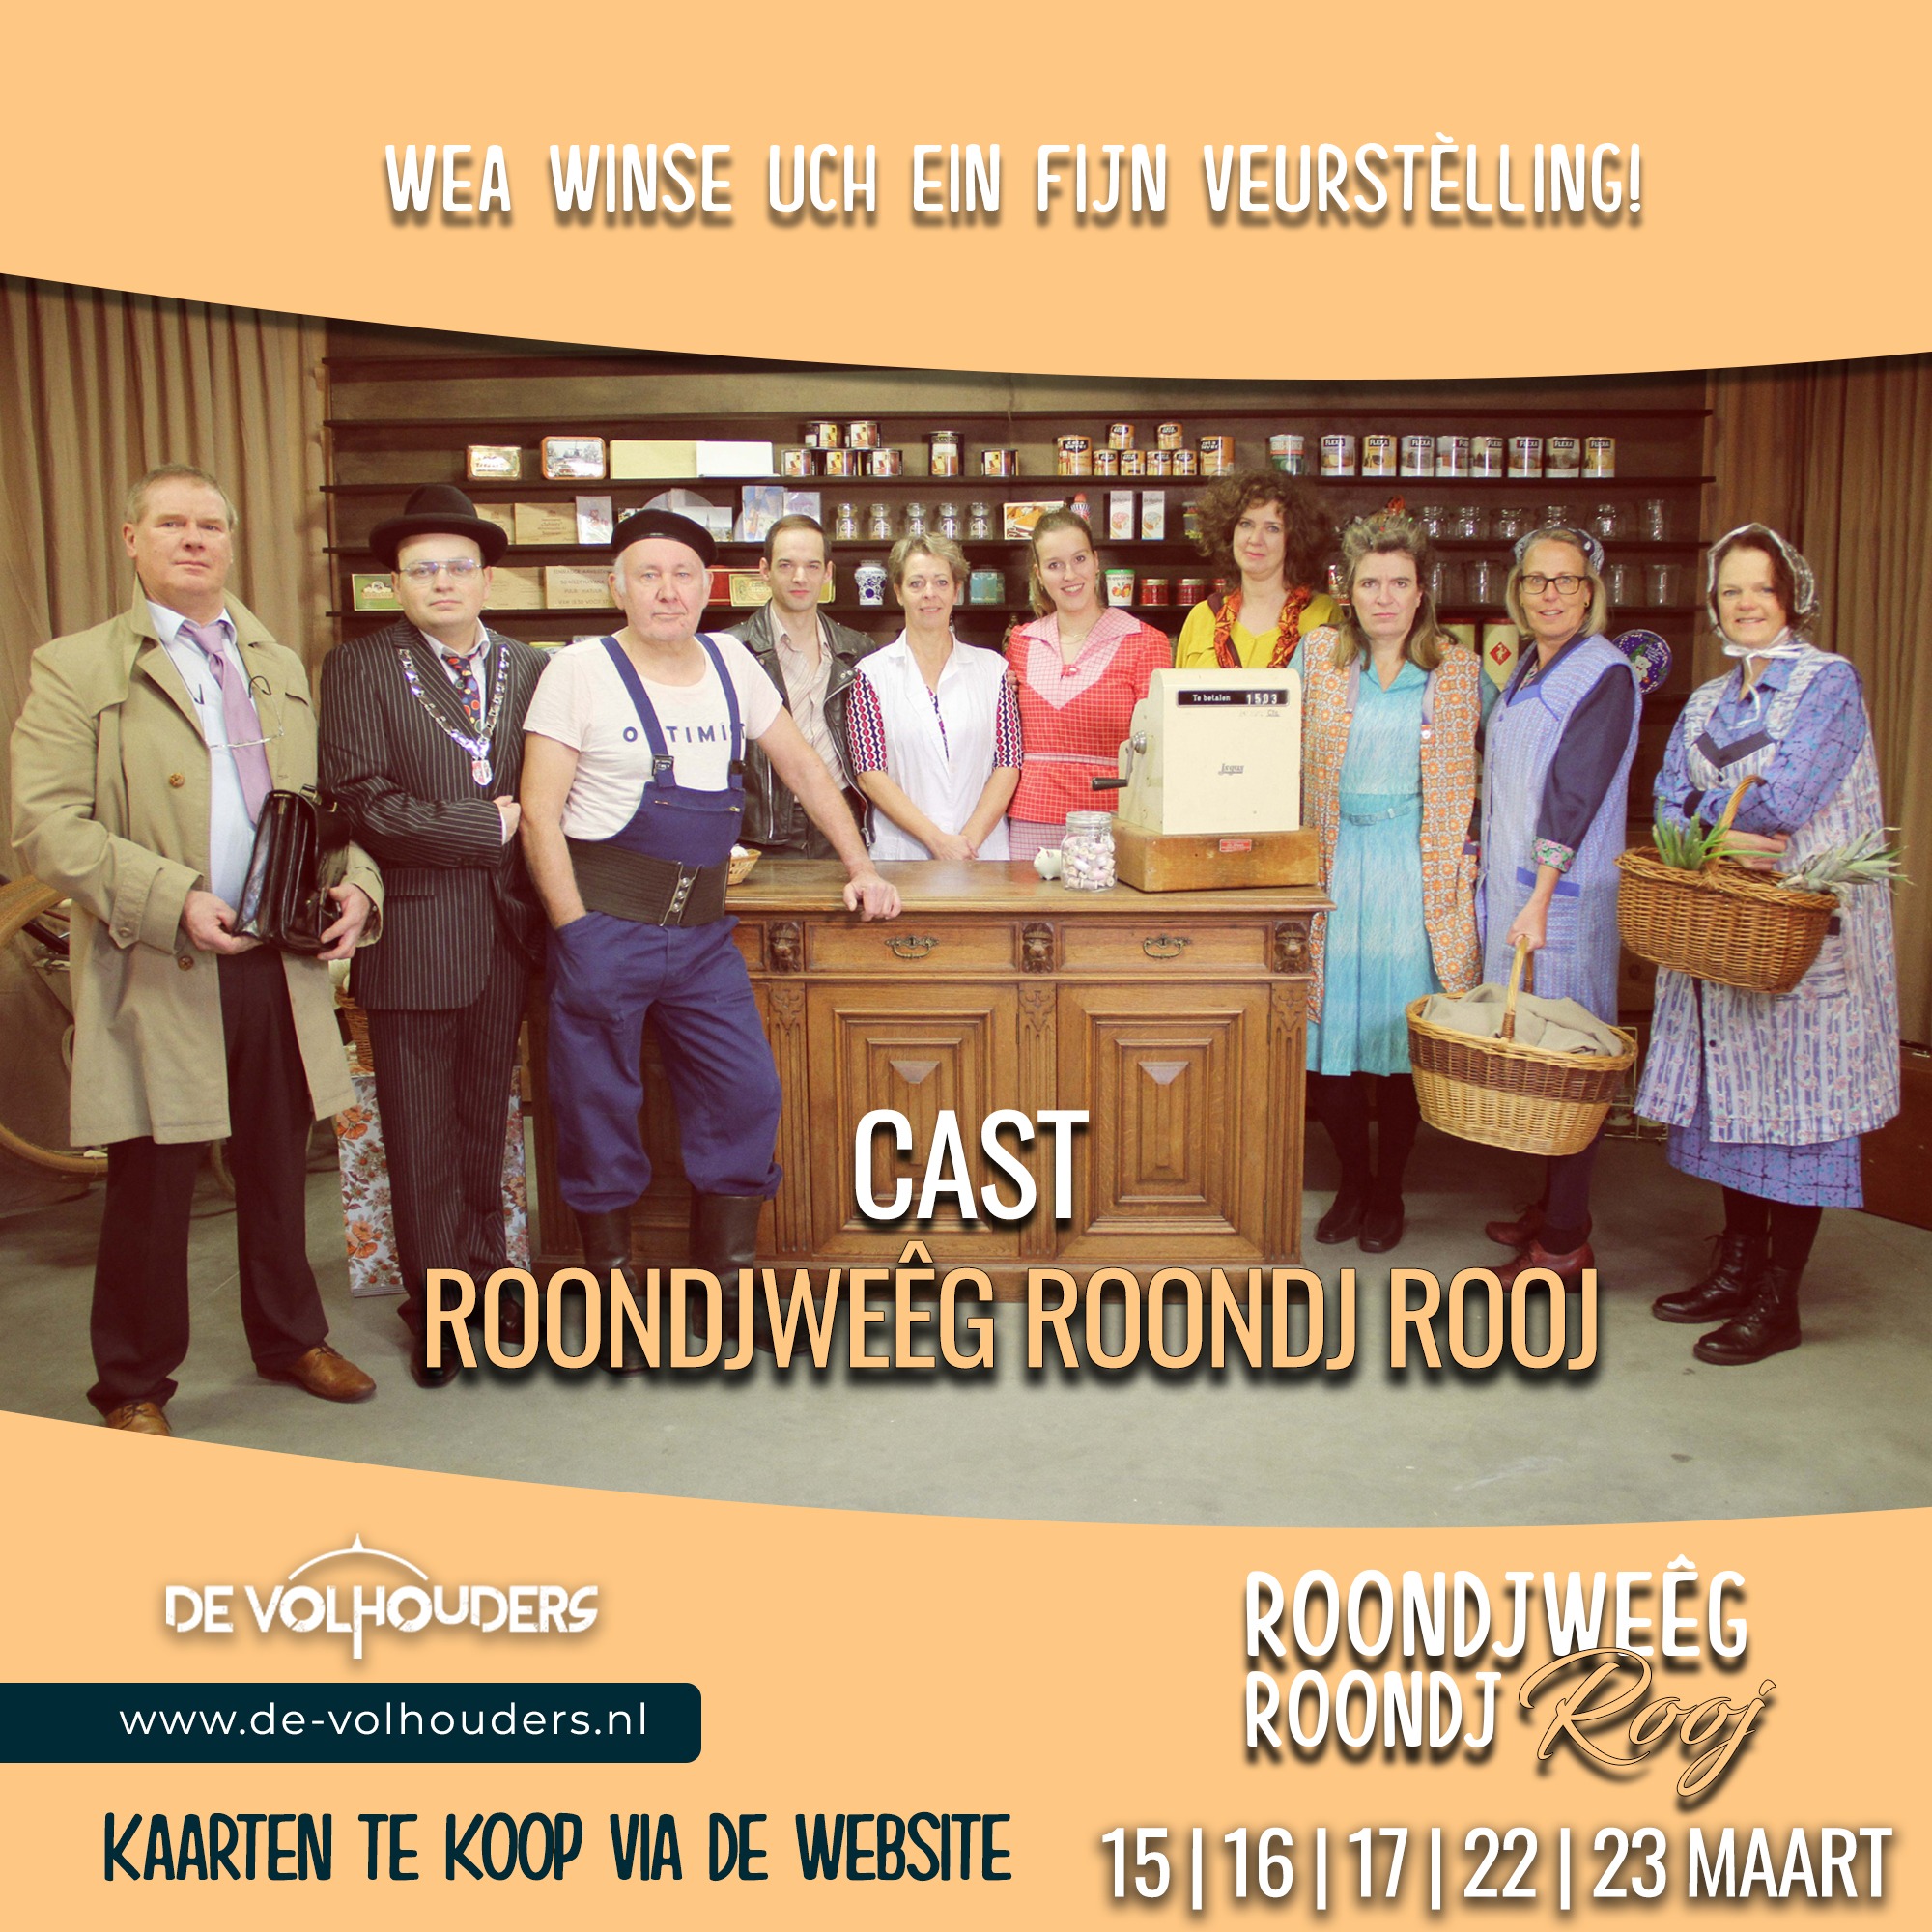 De Volhouders - Cast Roondjweêg roondj Rooj